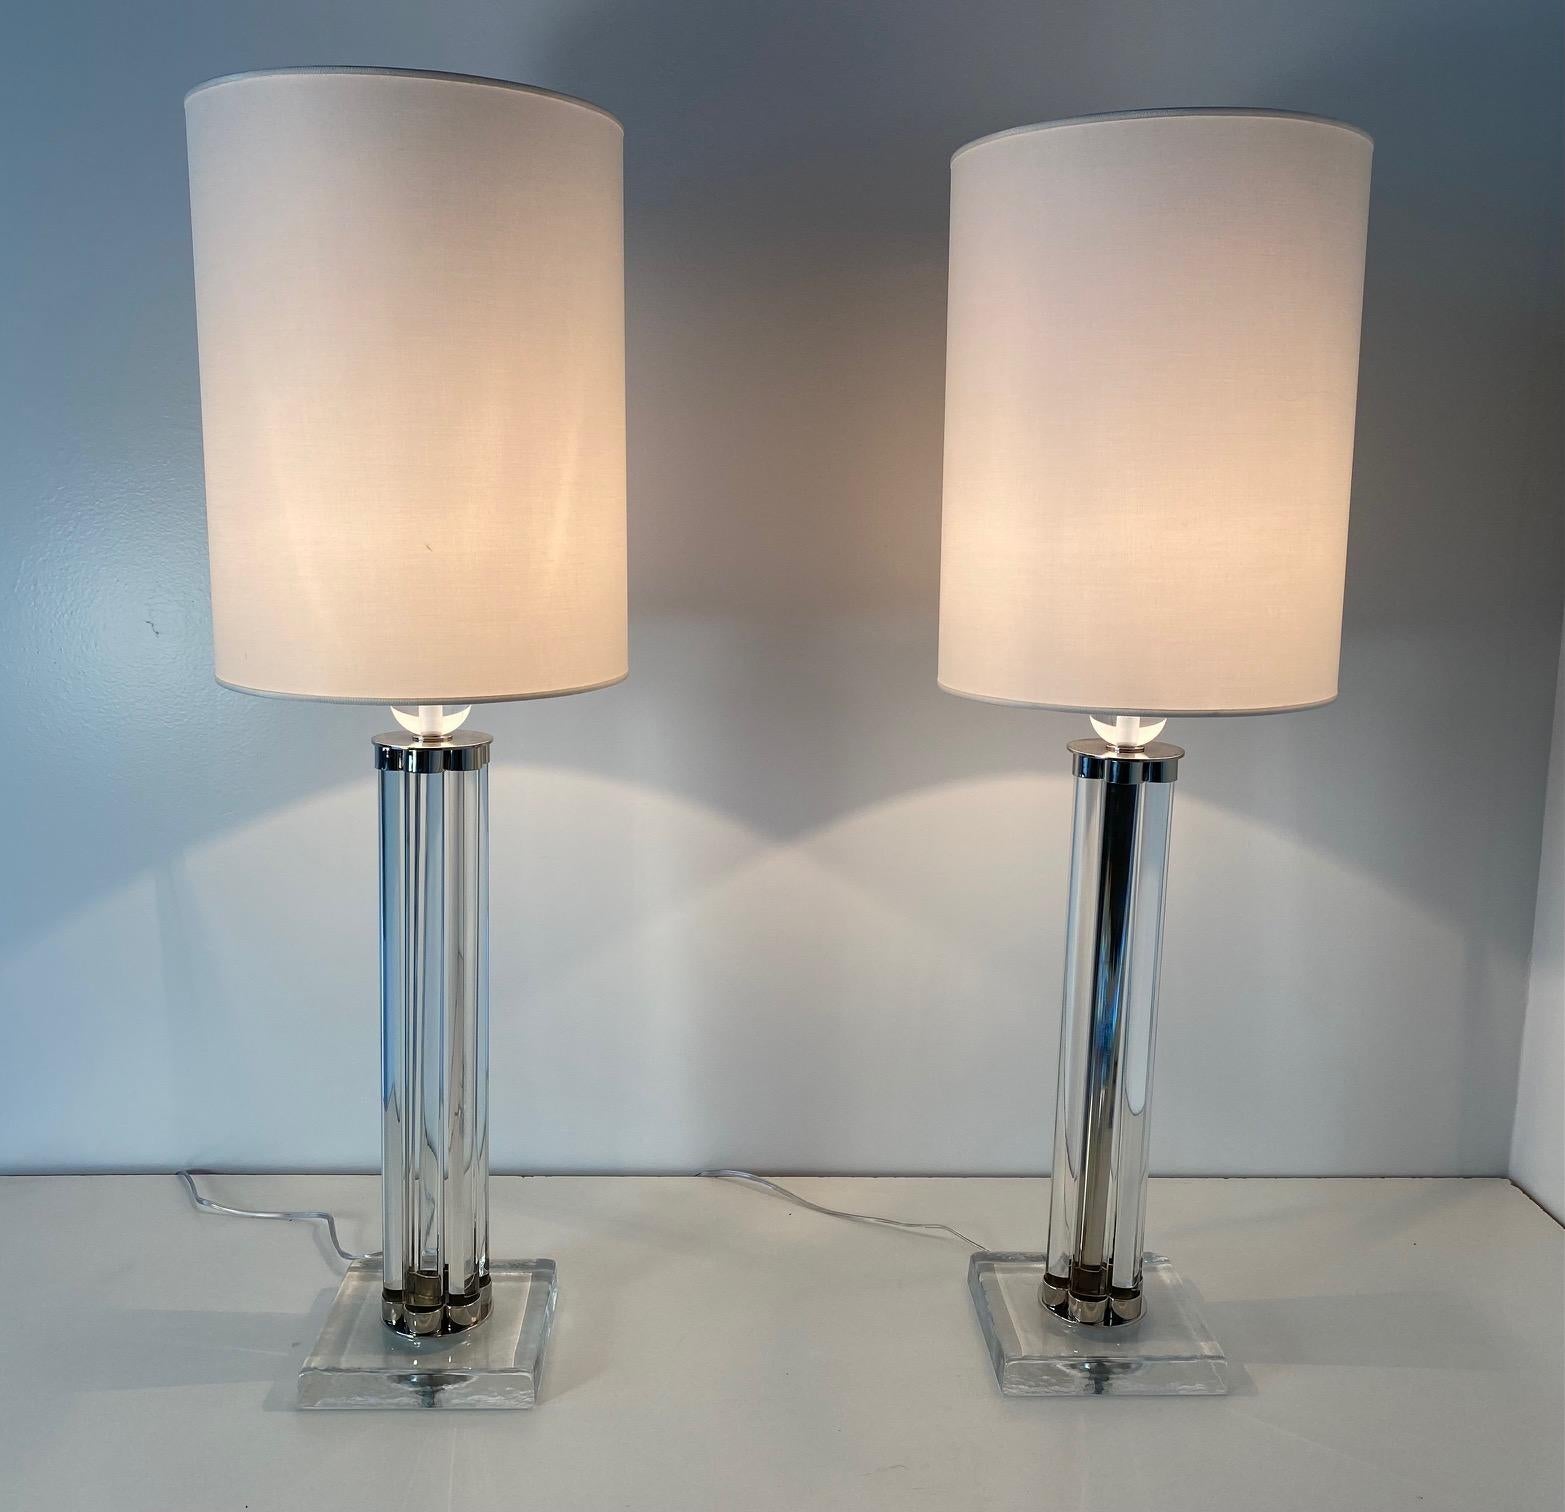 Cette paire de lampes de Murano a été produite en Italie au début des années 2000.
Les lampes sont entièrement en verre de Murano avec des détails chromés, tandis que l'abat-jour est blanc. 